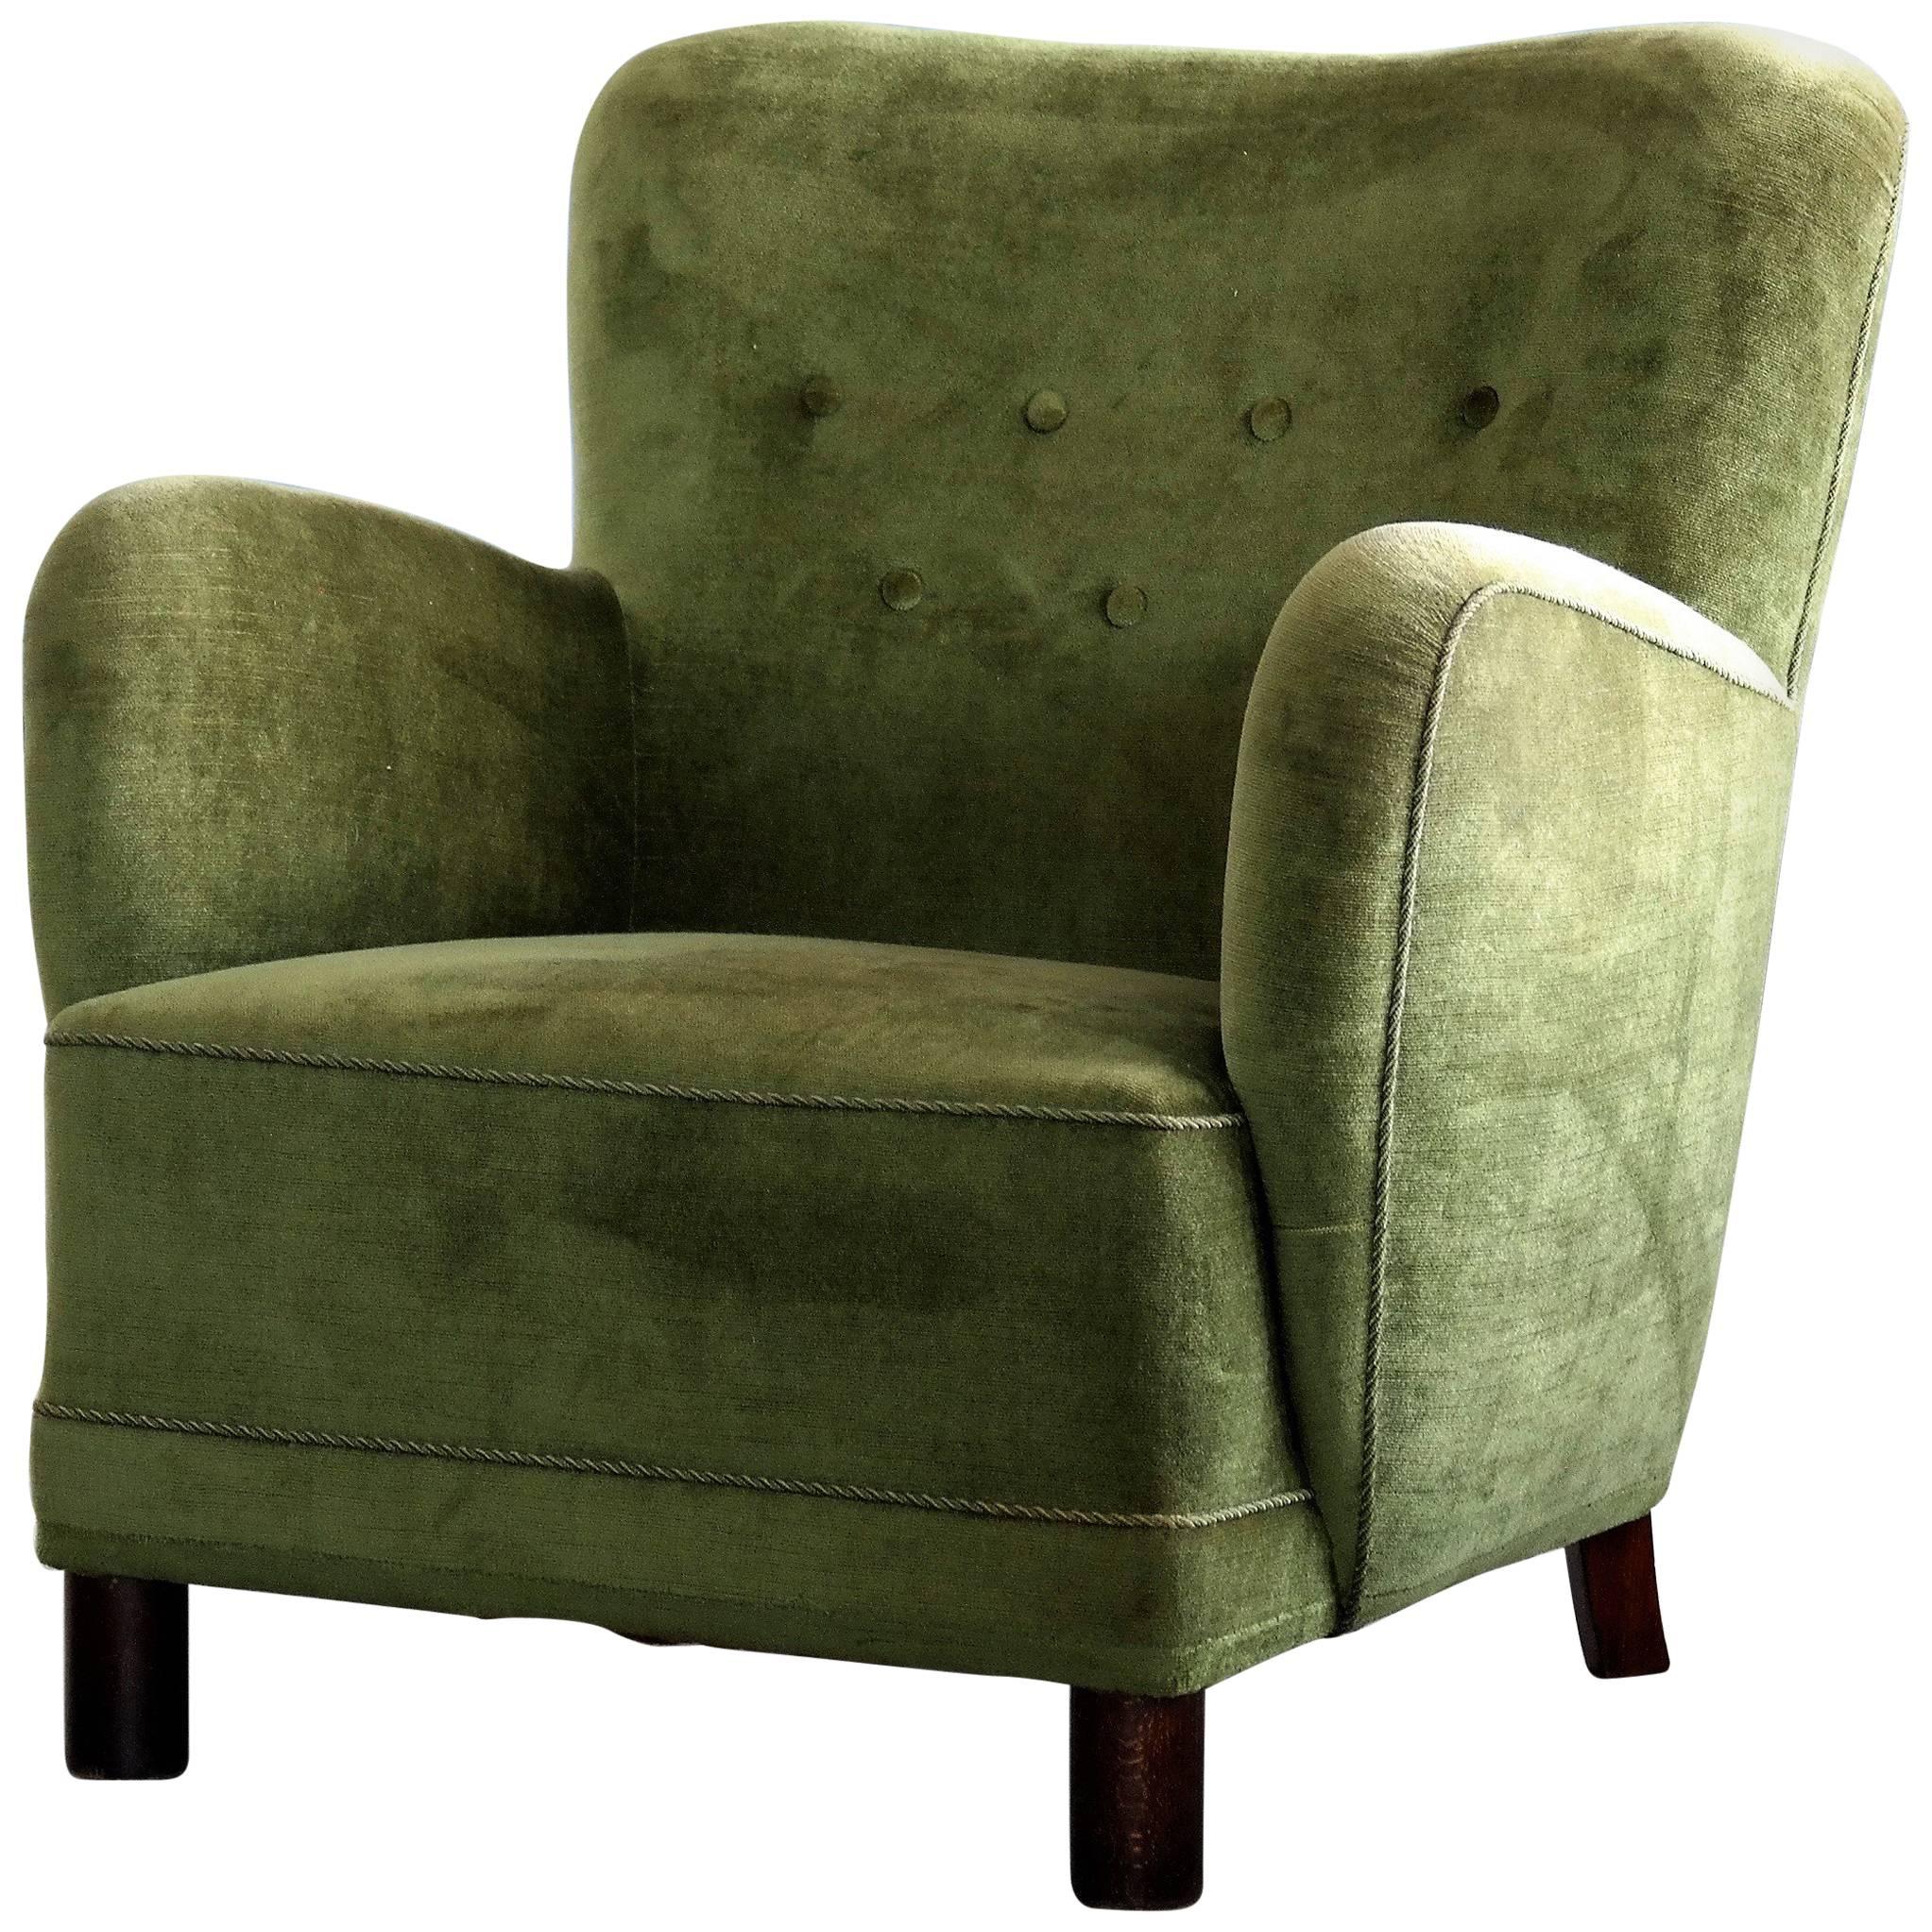 Danish Midcentury, 1940s Mogens Lassen Attributed Lounge Chair in Mohair Velvet